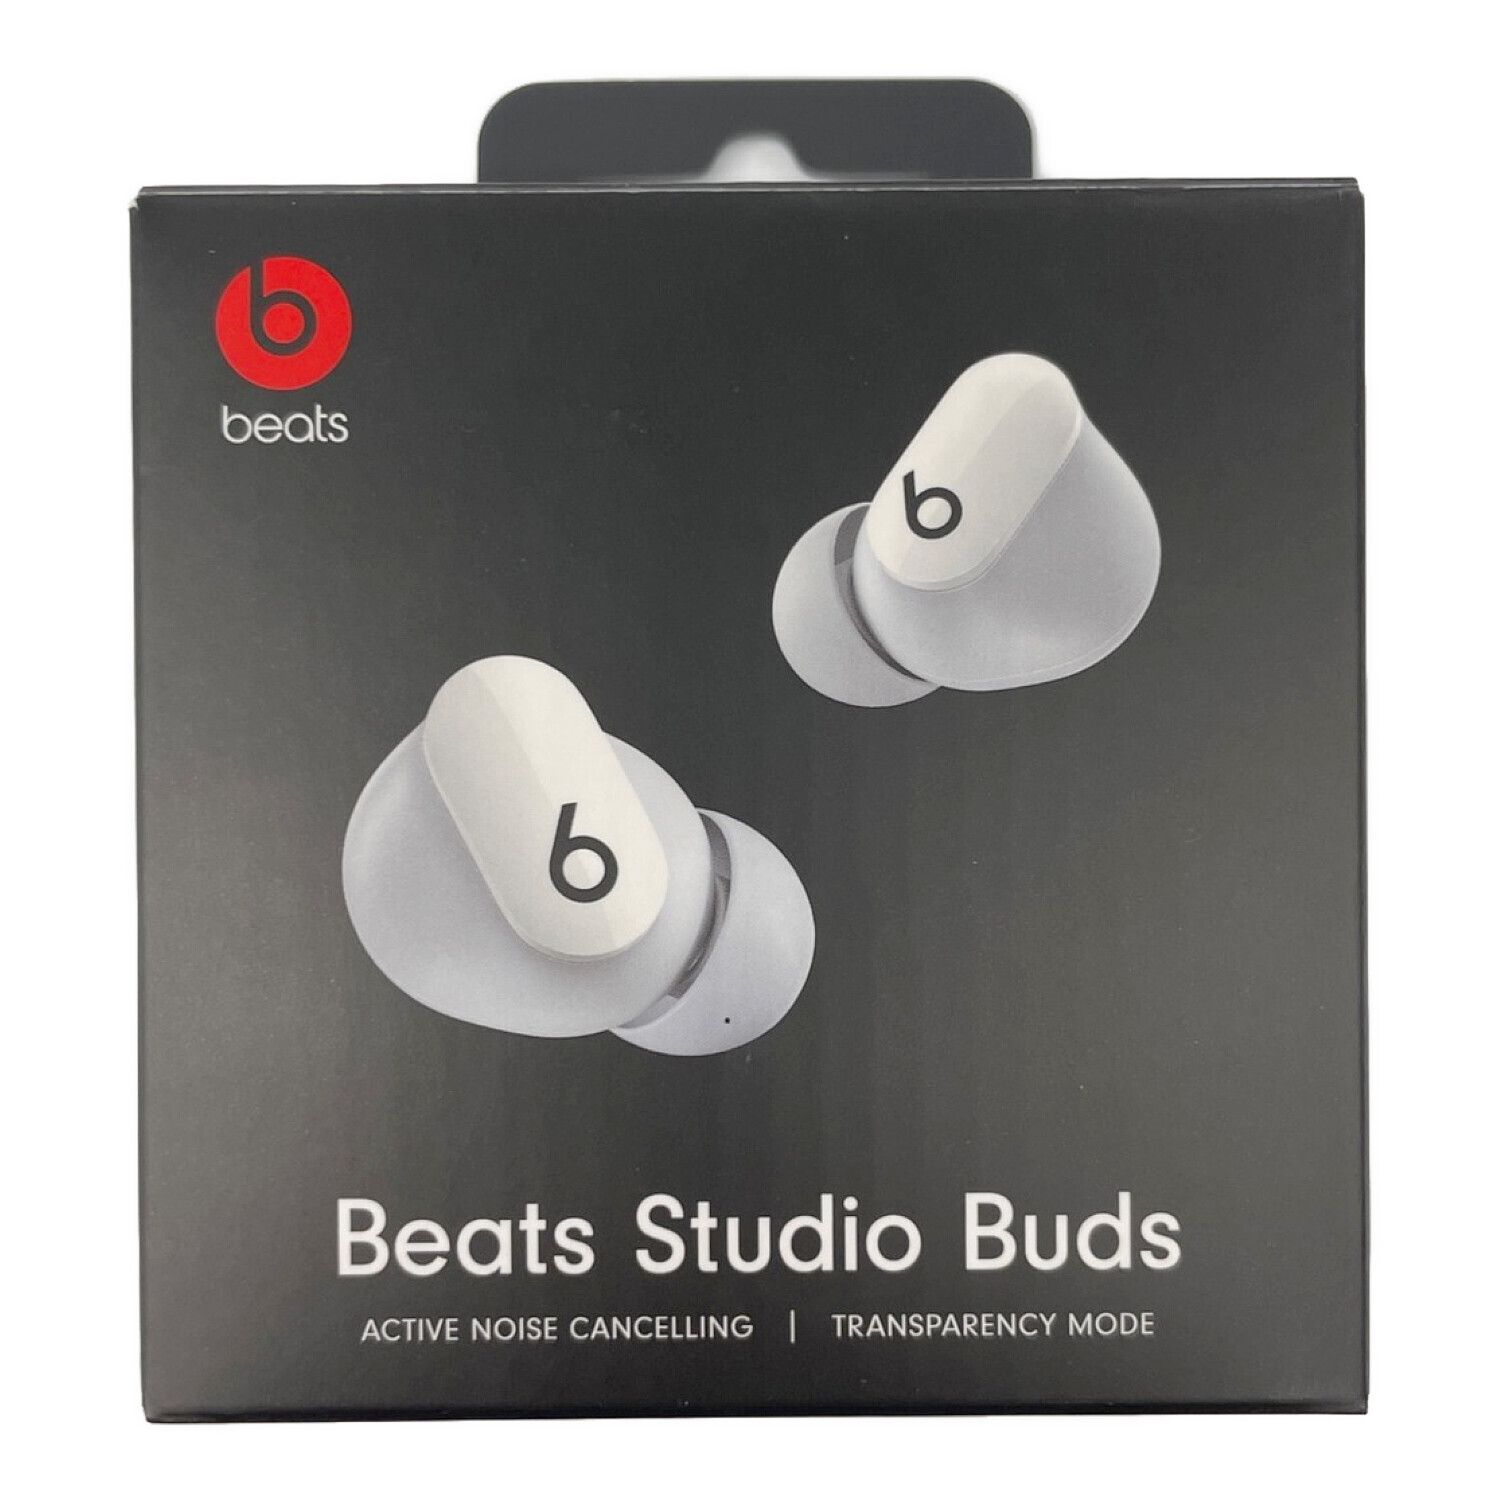 beats (ビーツ) ワイヤレスイヤホン Sutudio Buds (スタジオバッズ